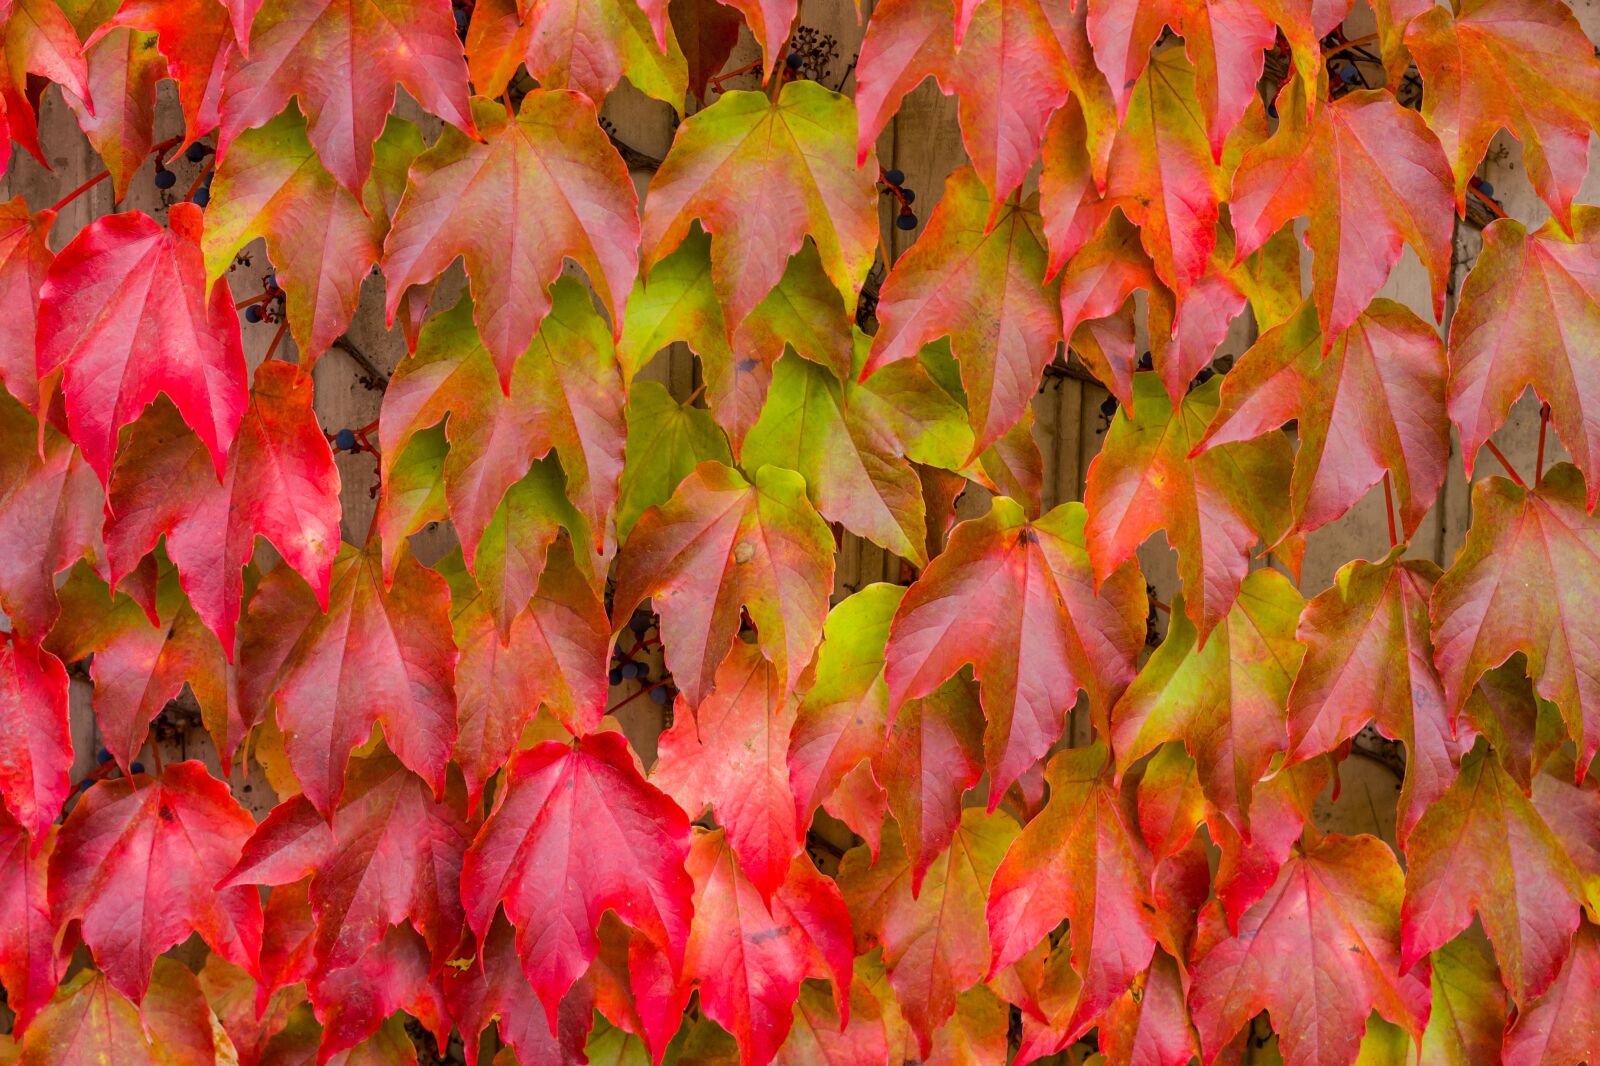 Leica M10 sample photo. Nature, leaves, fall foliage photography